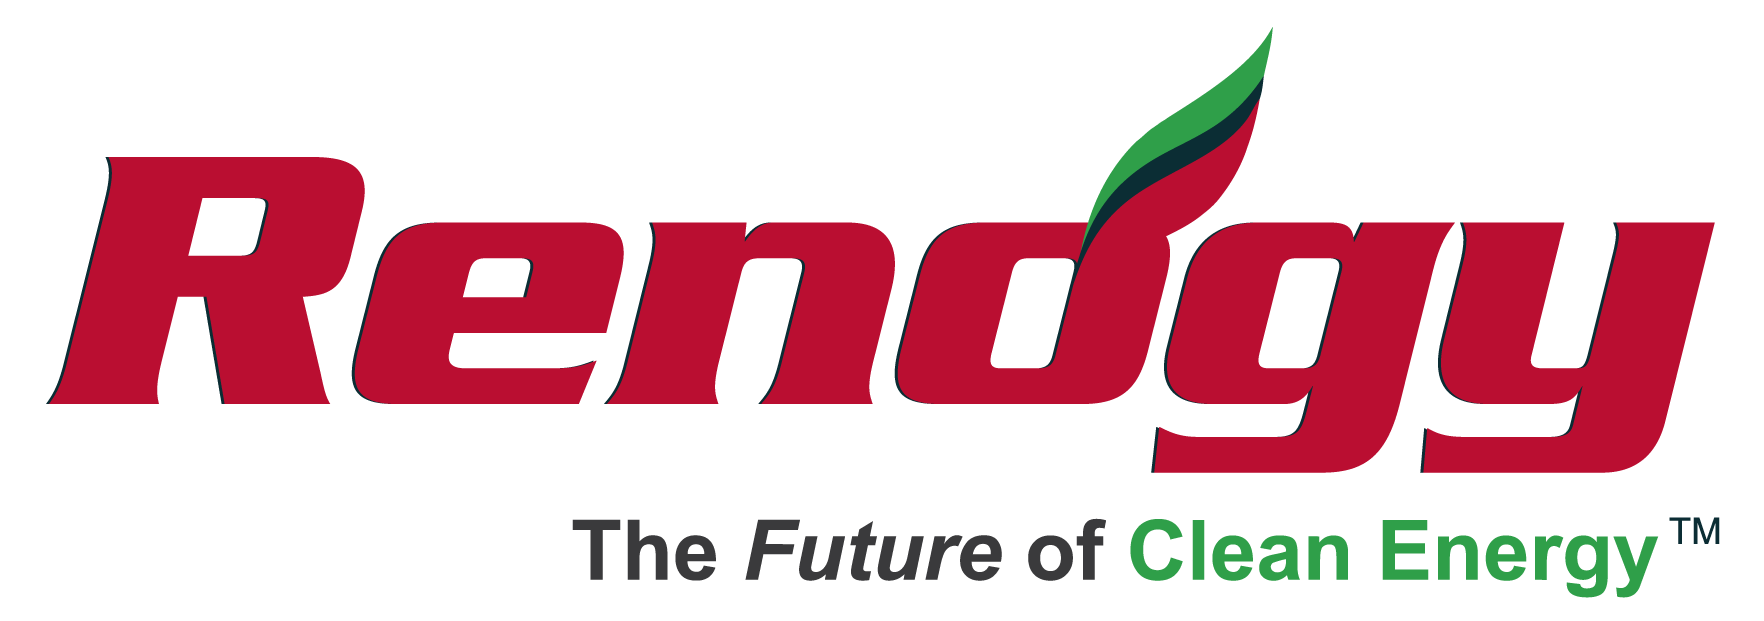 Renogy Logo